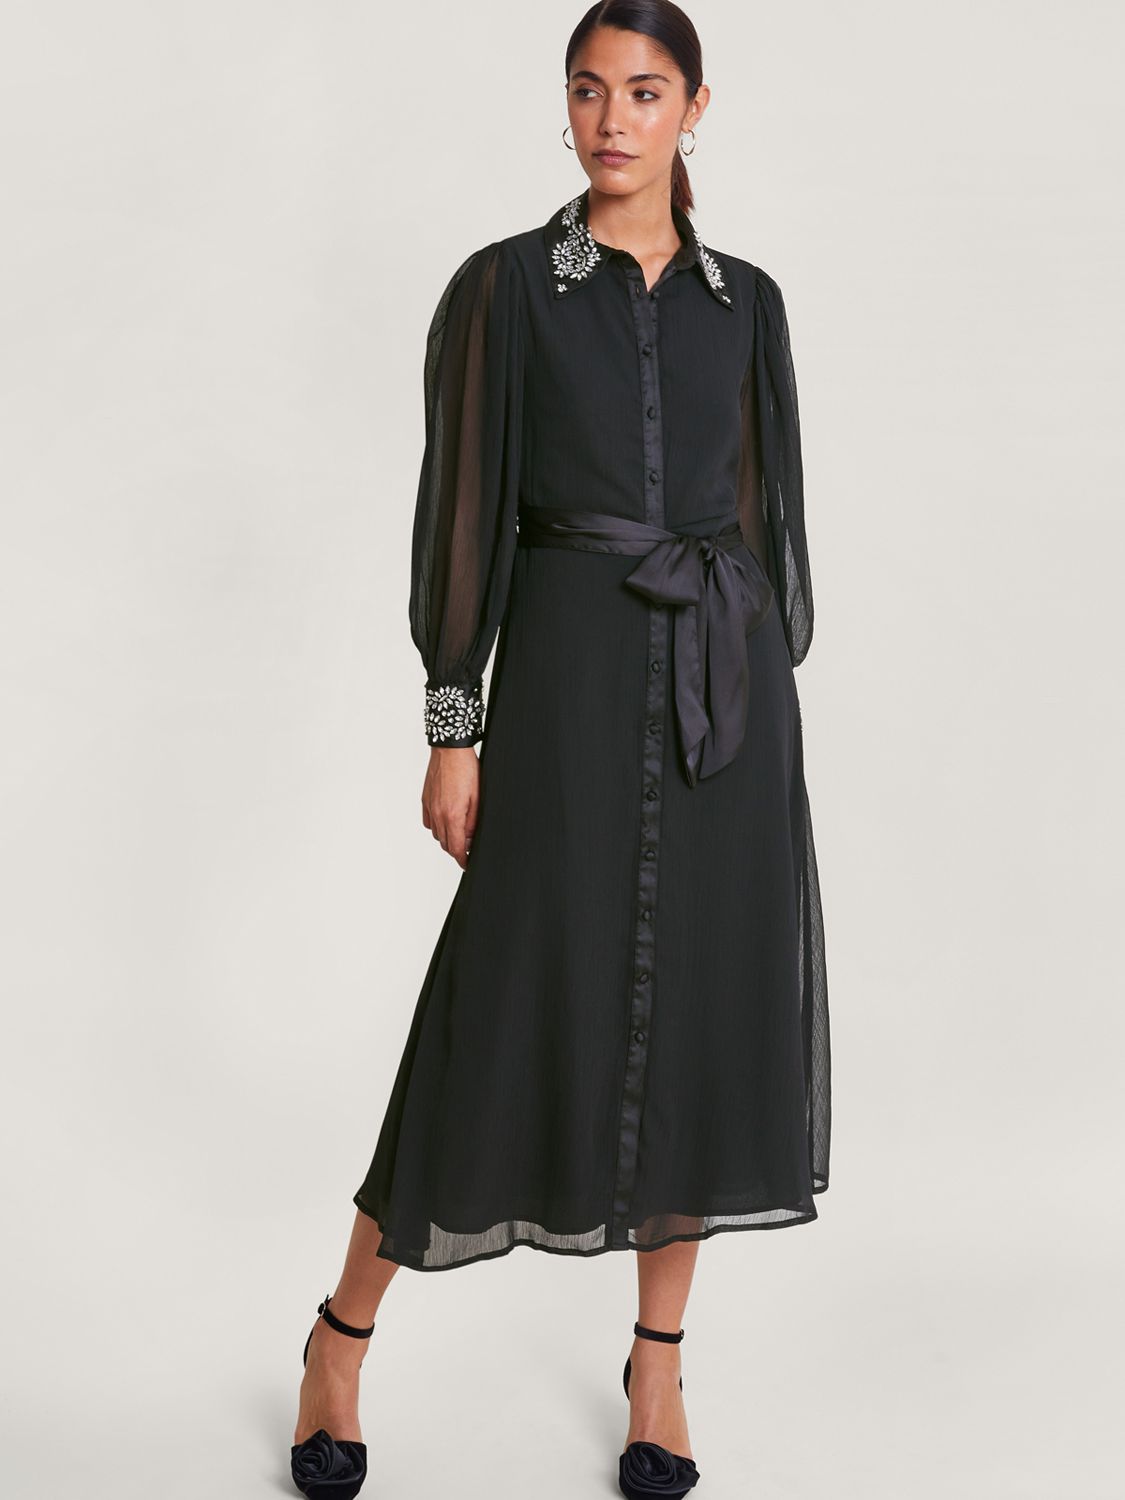 Monsoon Lorenna Embellished Shirt Dress, Black at John Lewis & Partners